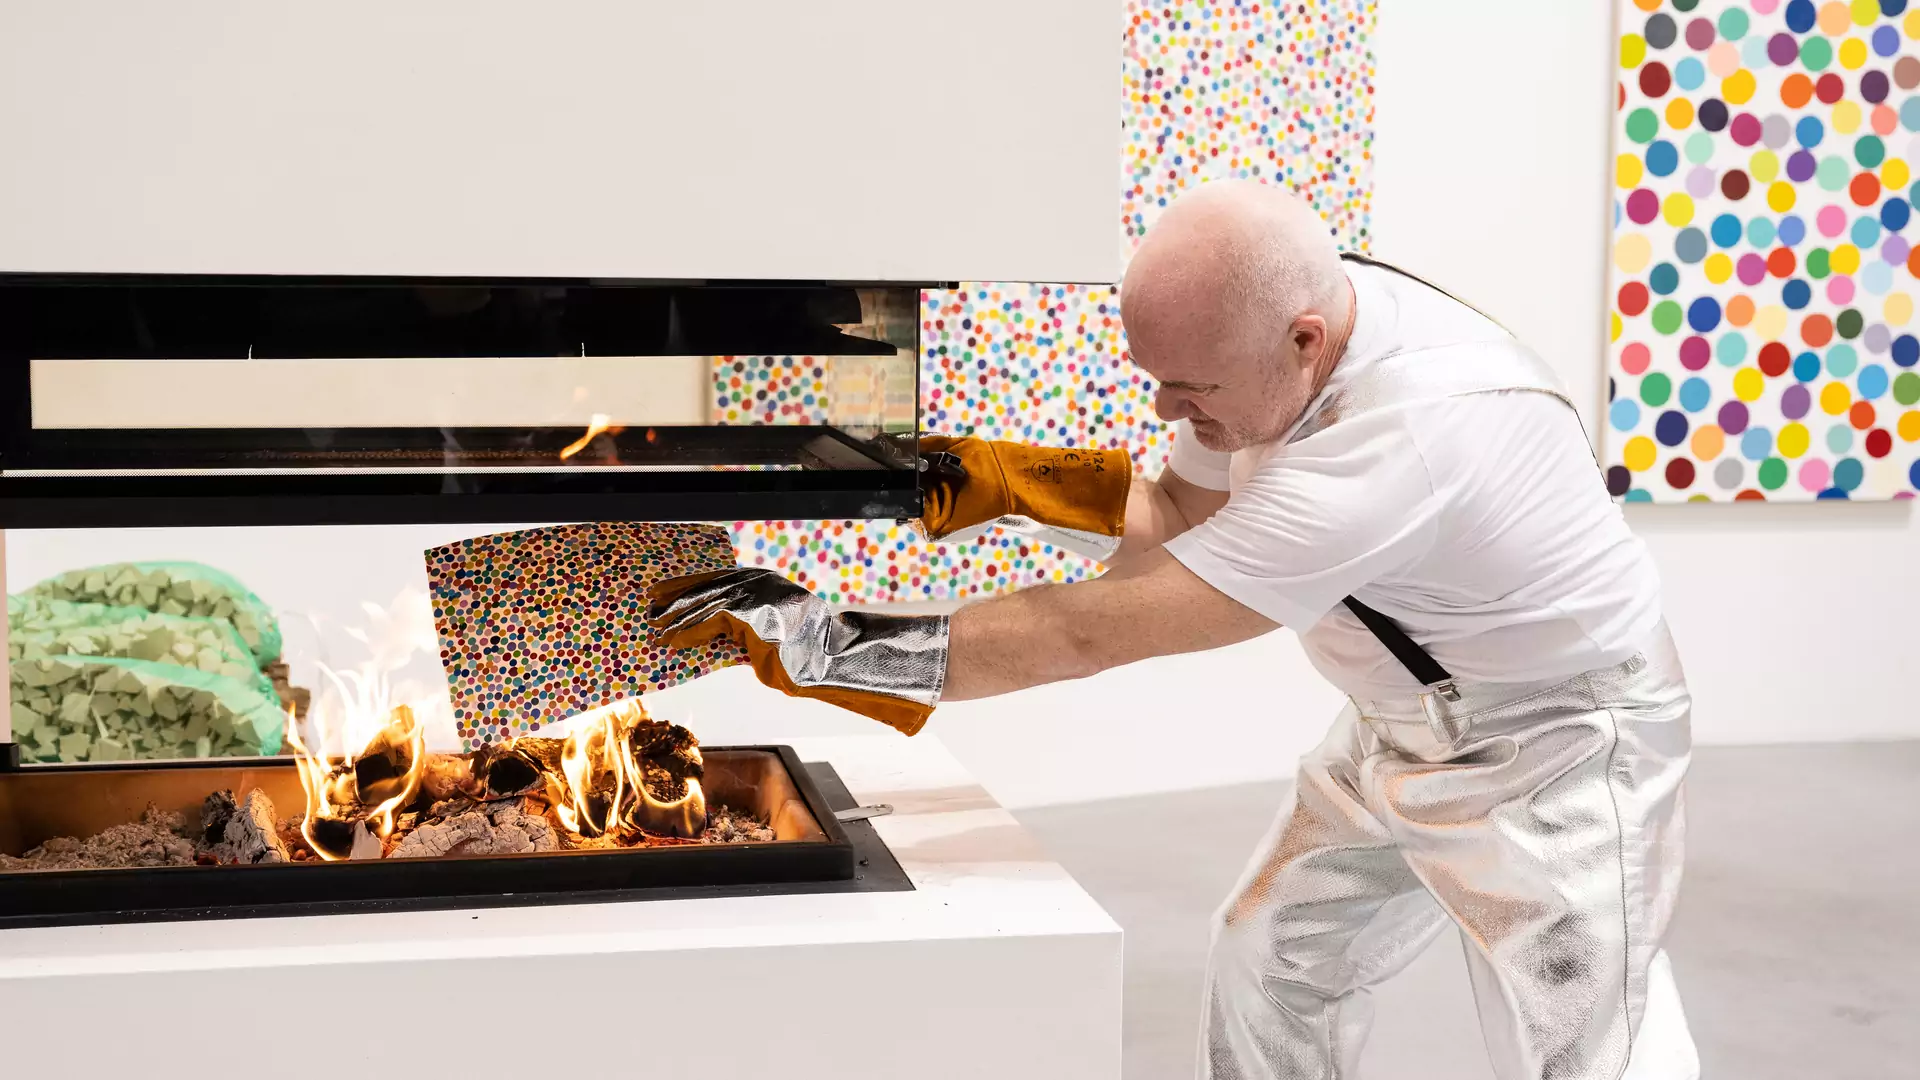 Artysta spalił tysiąc swoich obrazów. Były wyceniane na miliony dolarów